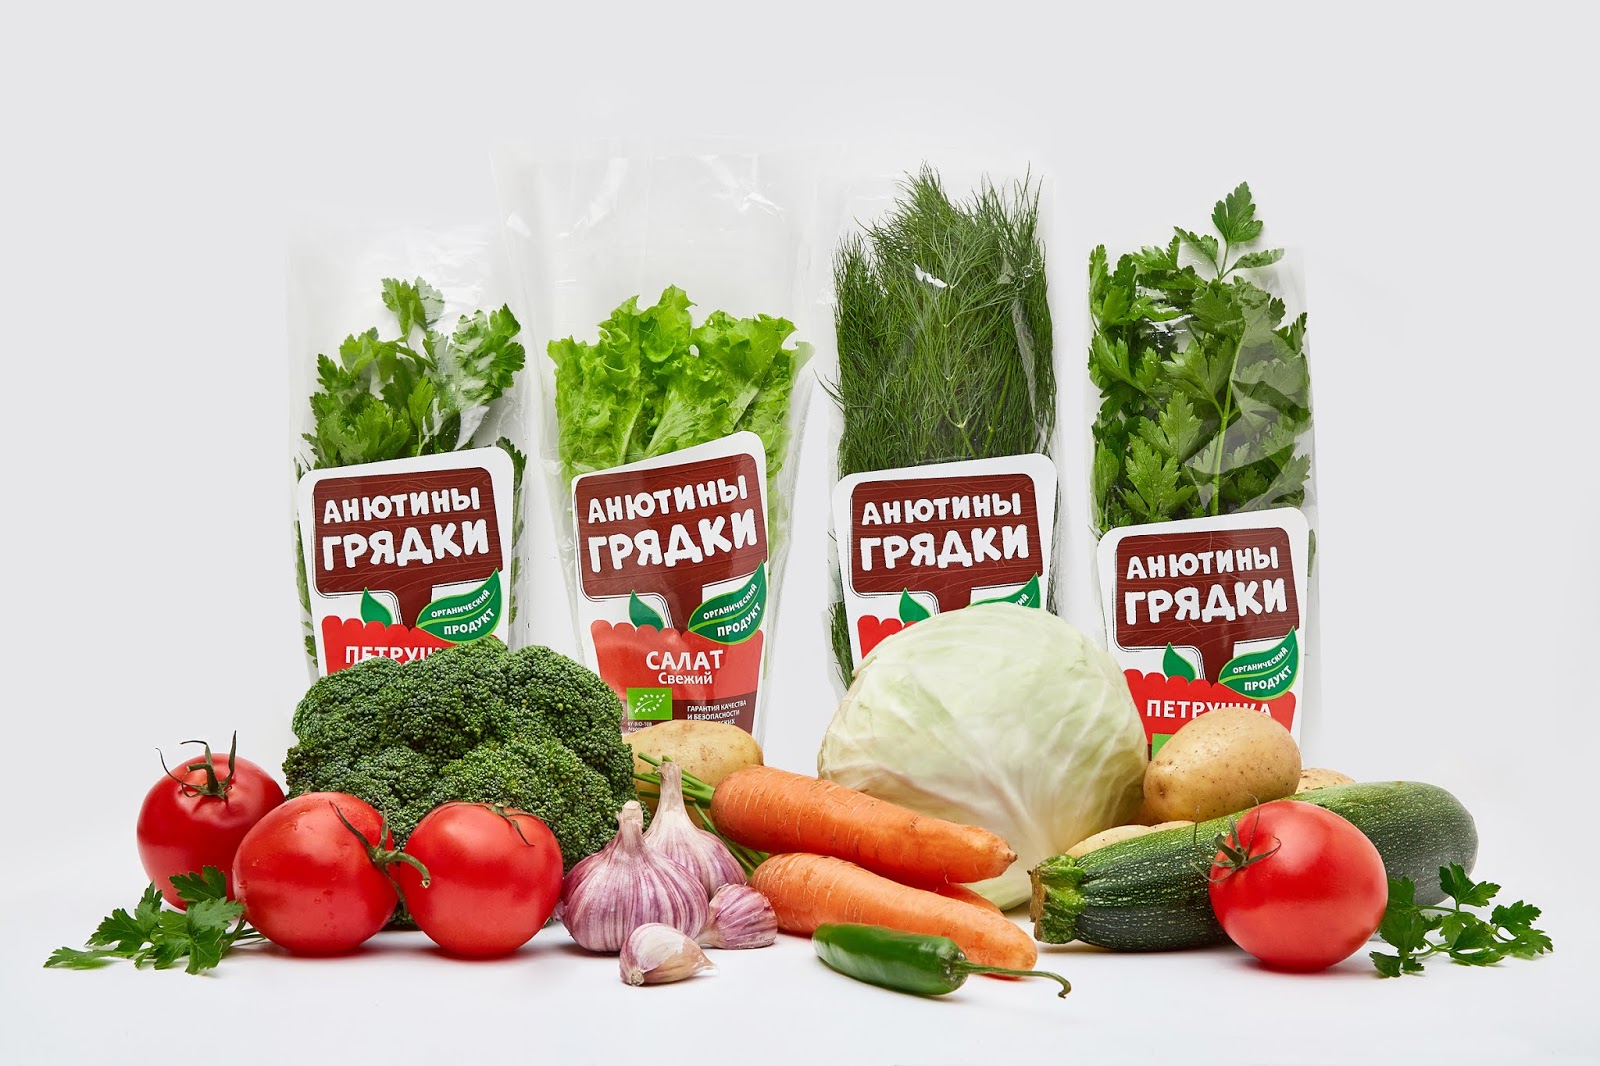 有机蔬菜西安四喜品牌包装设计